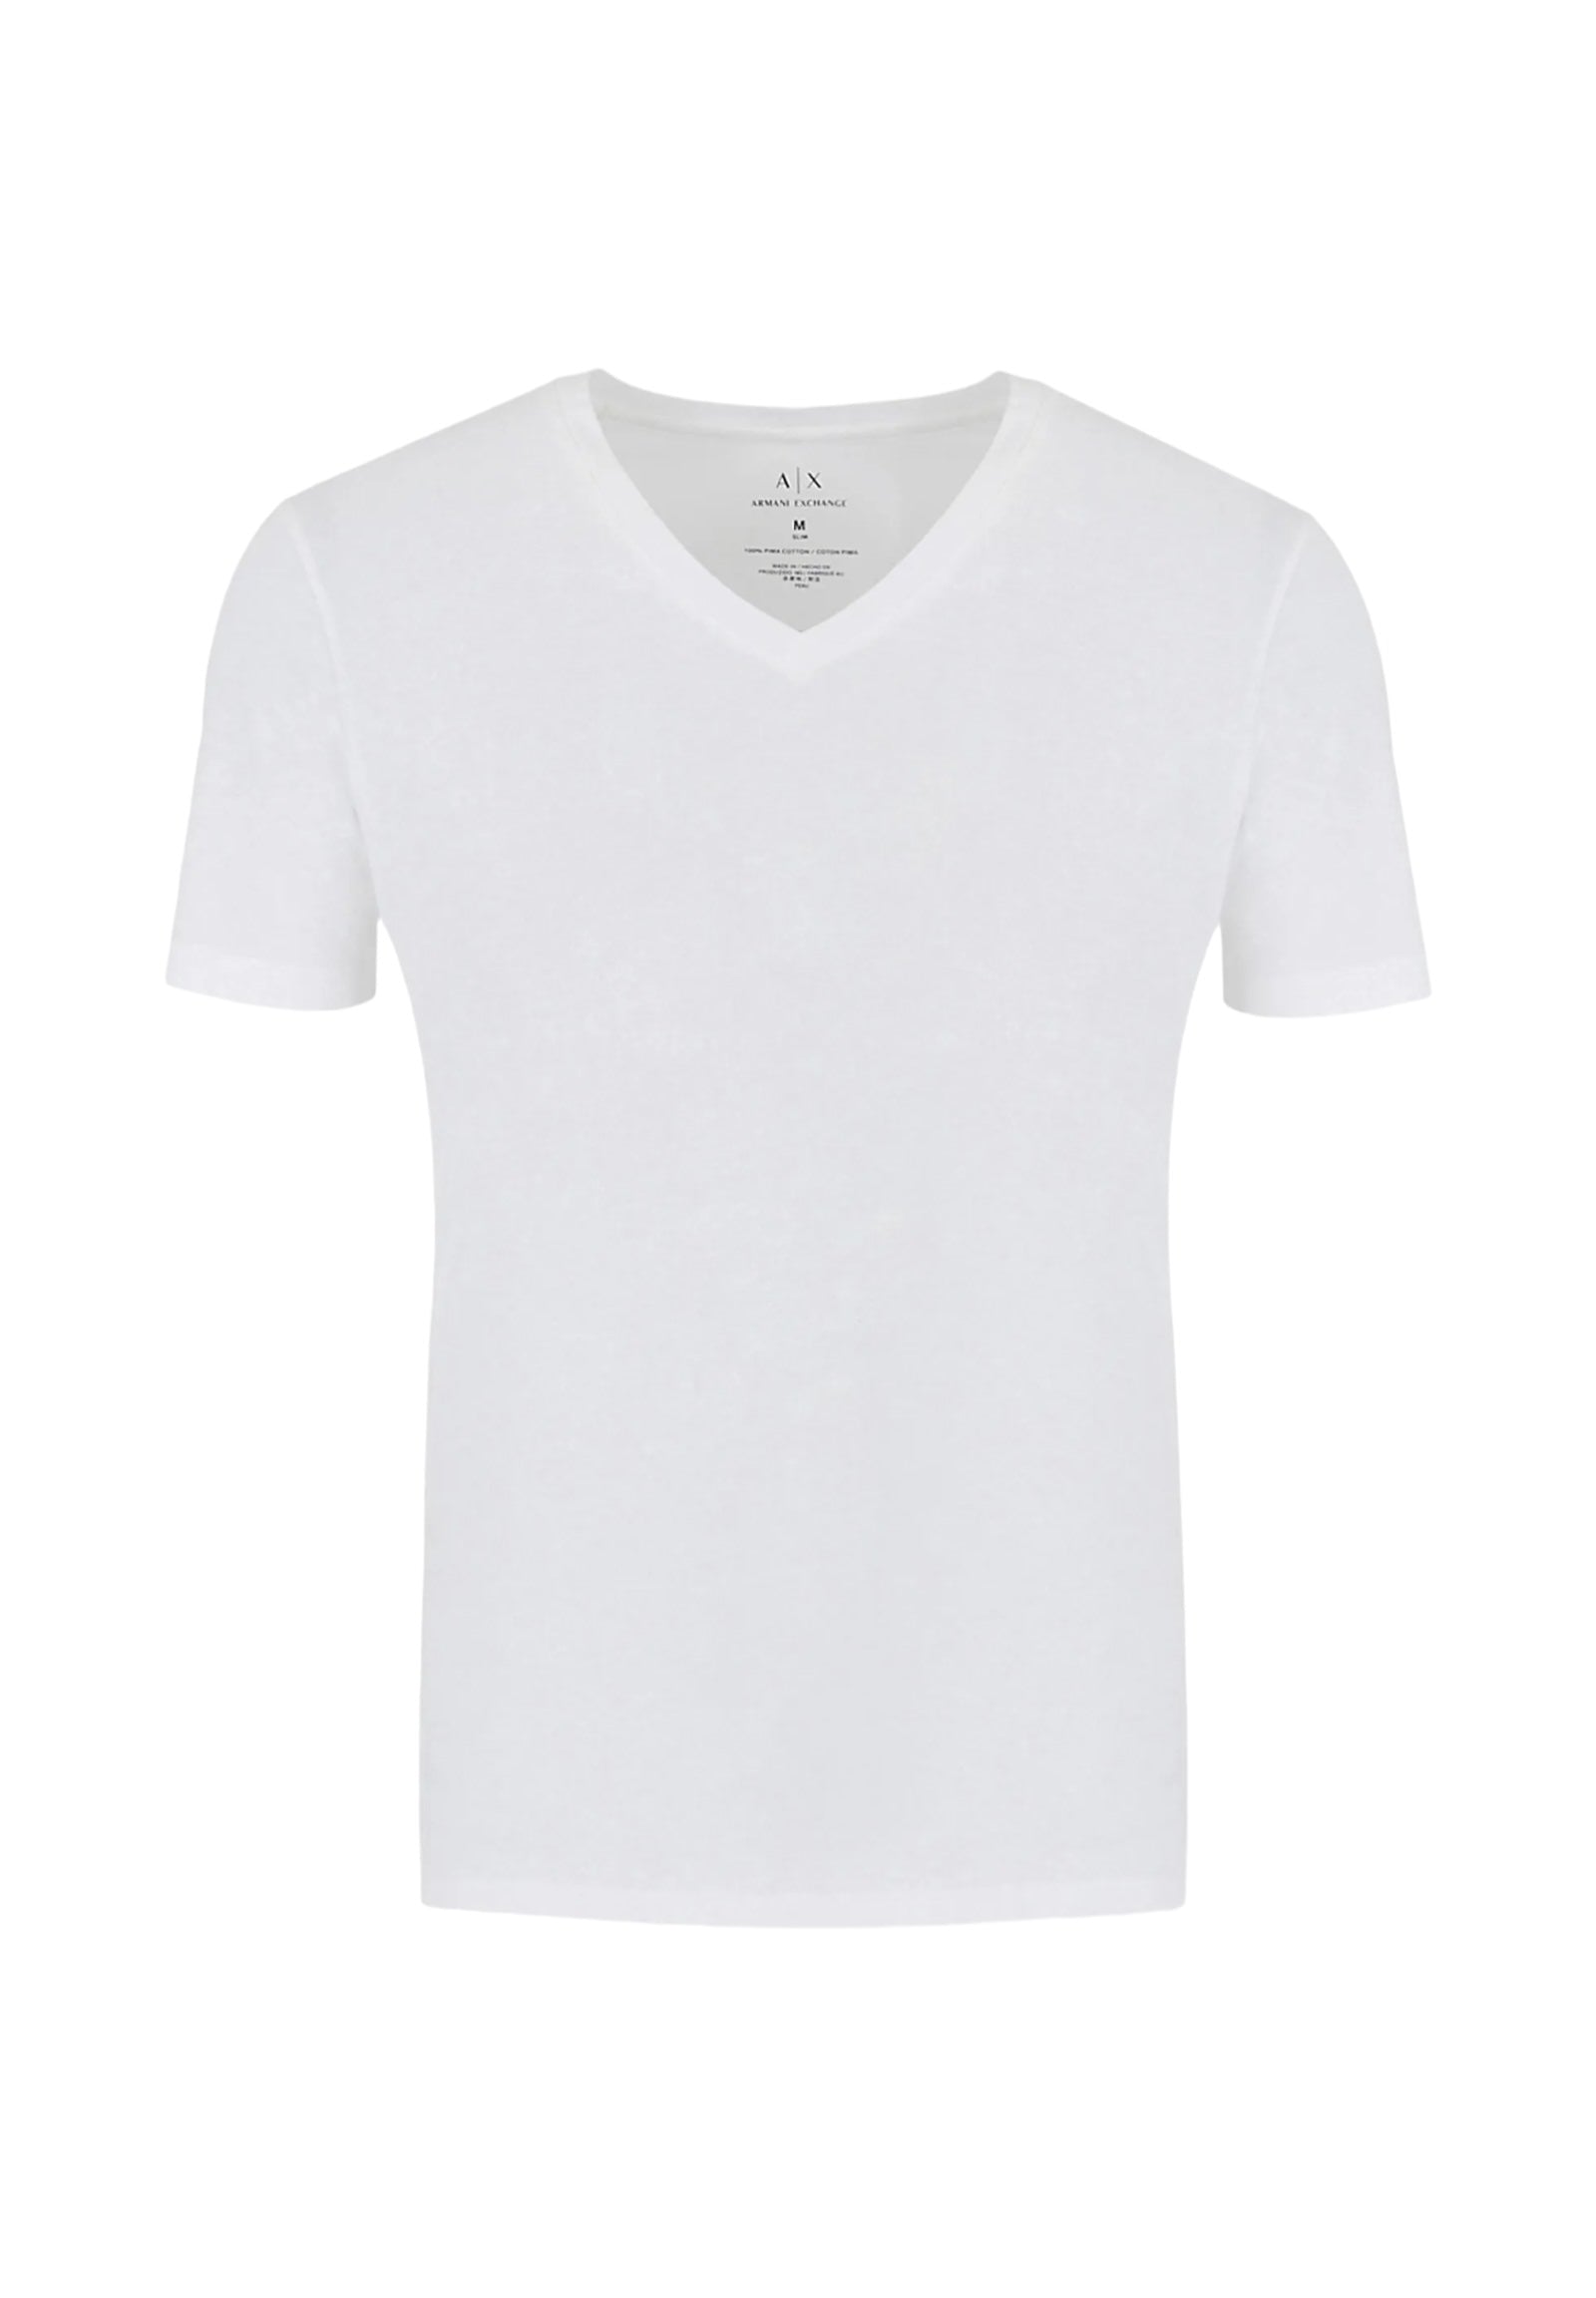 8nzt75 White T-Shirt